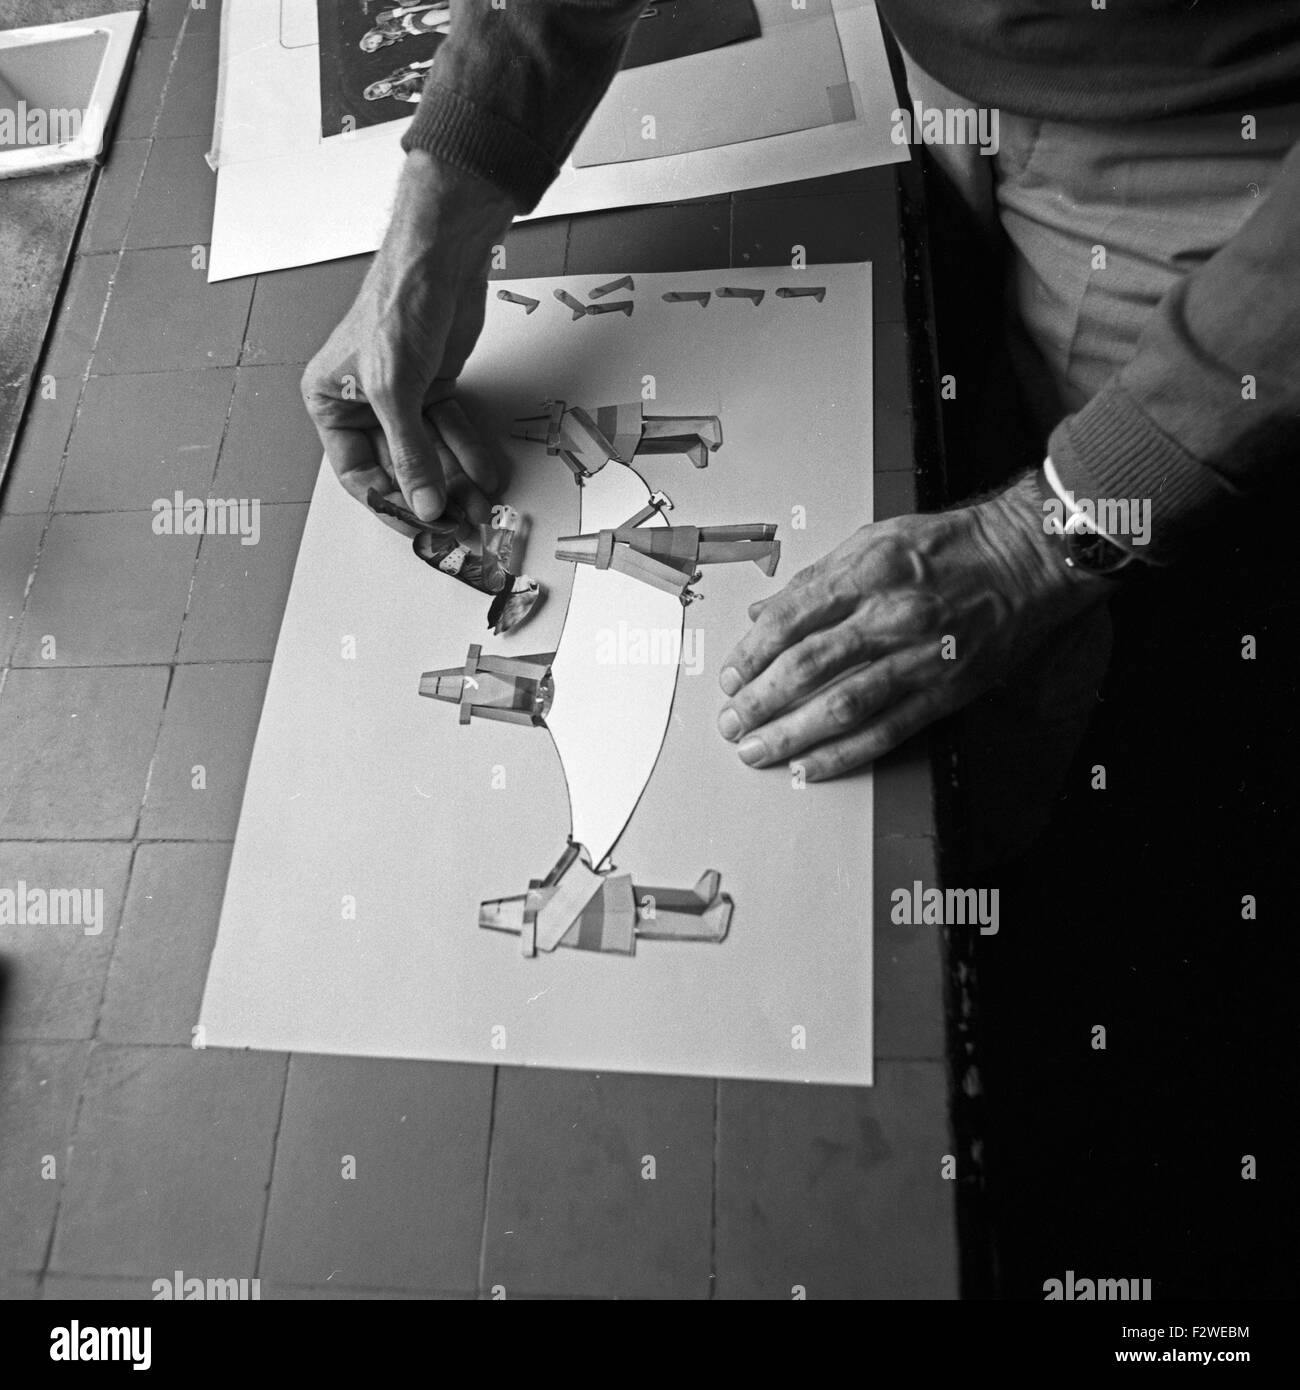 Betrieb eines Barbarelle Bande Dessinée, Deutschland 1960 er Jahre. La production d'une bande dessinée Barbarella, l'Allemagne des années 1960. Banque D'Images